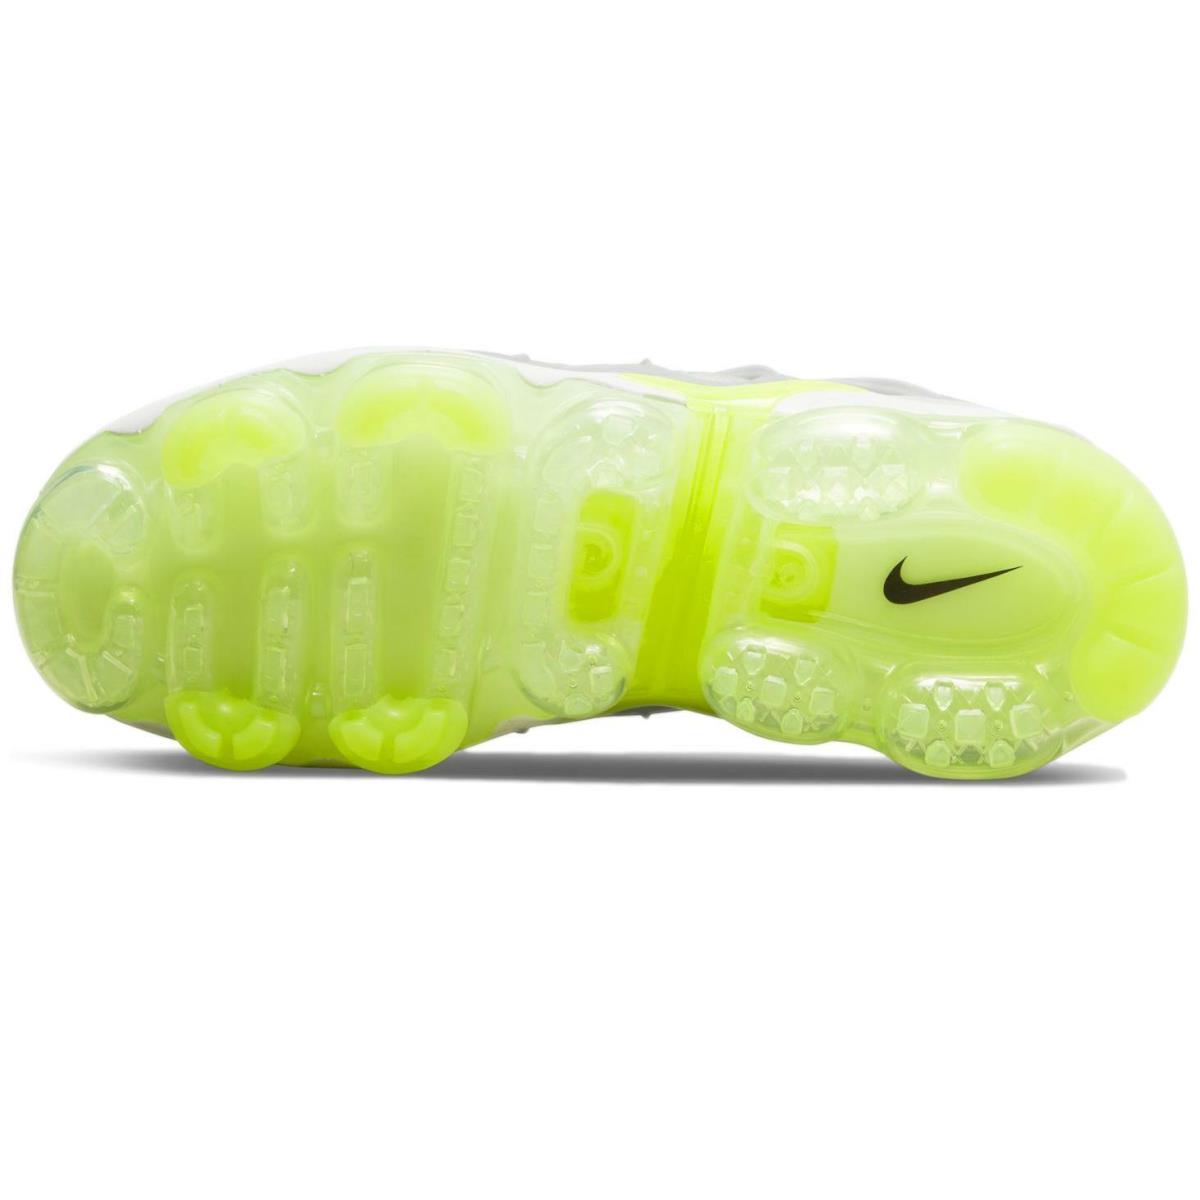 Nike shoes Air Vapormax Plus - Photon Dust/Black-Volt 1